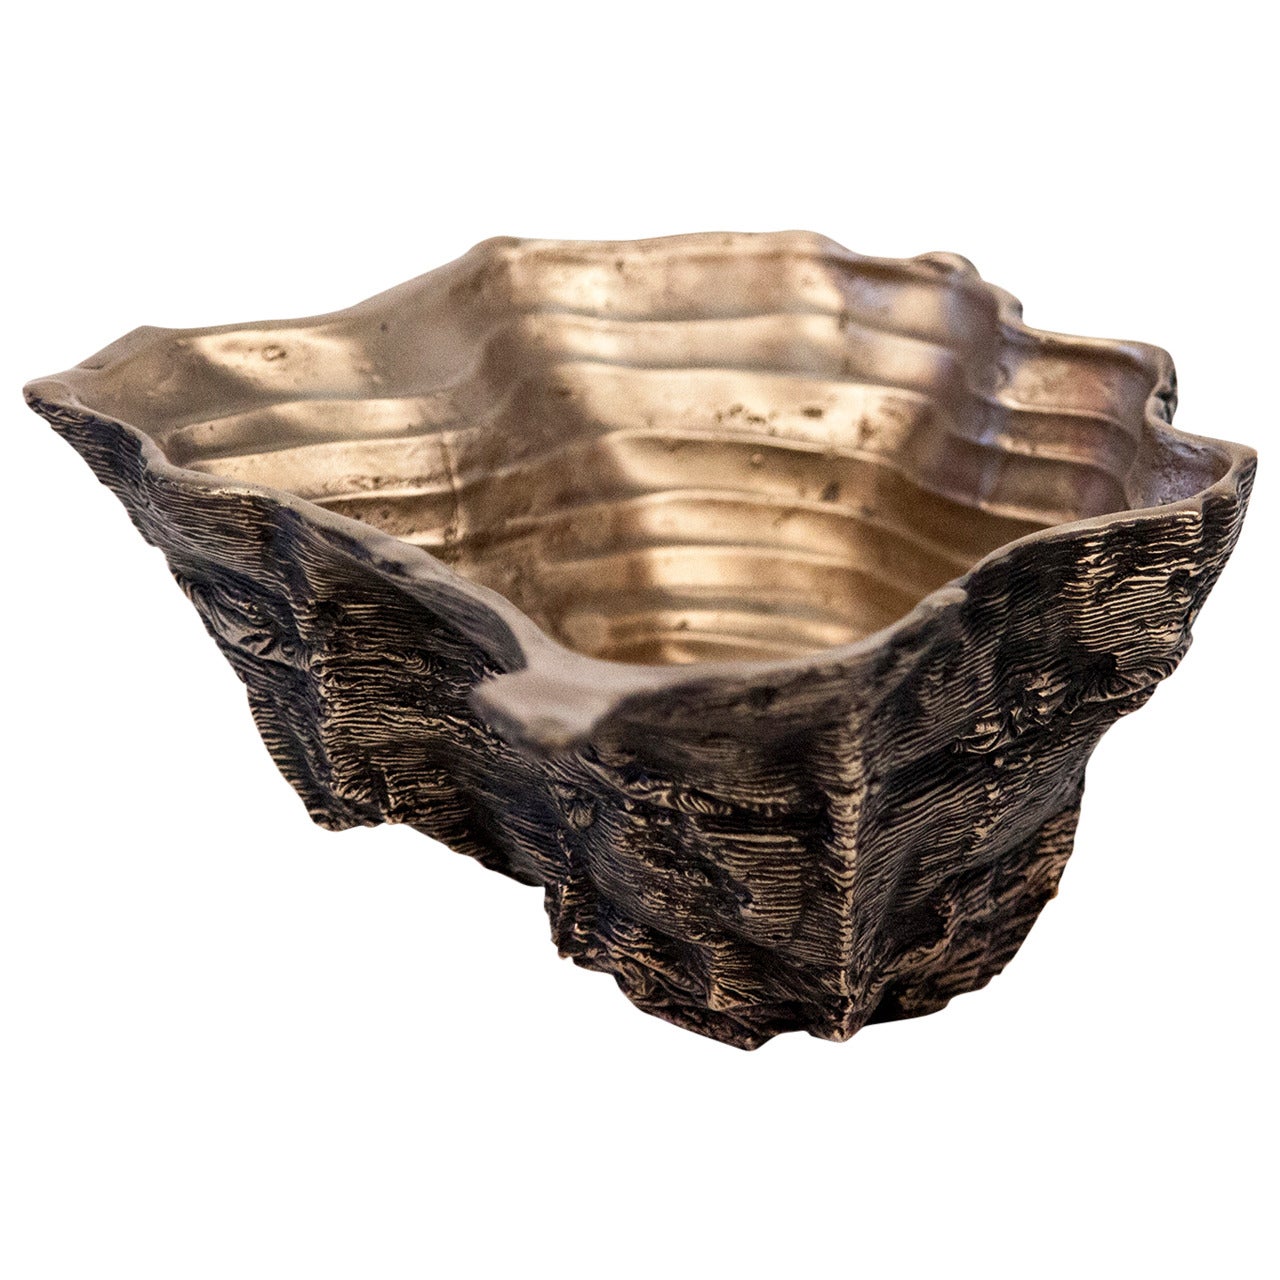 Ice-Cast Bronze Vessel No.13 by Steven Haulenbeek For Sale